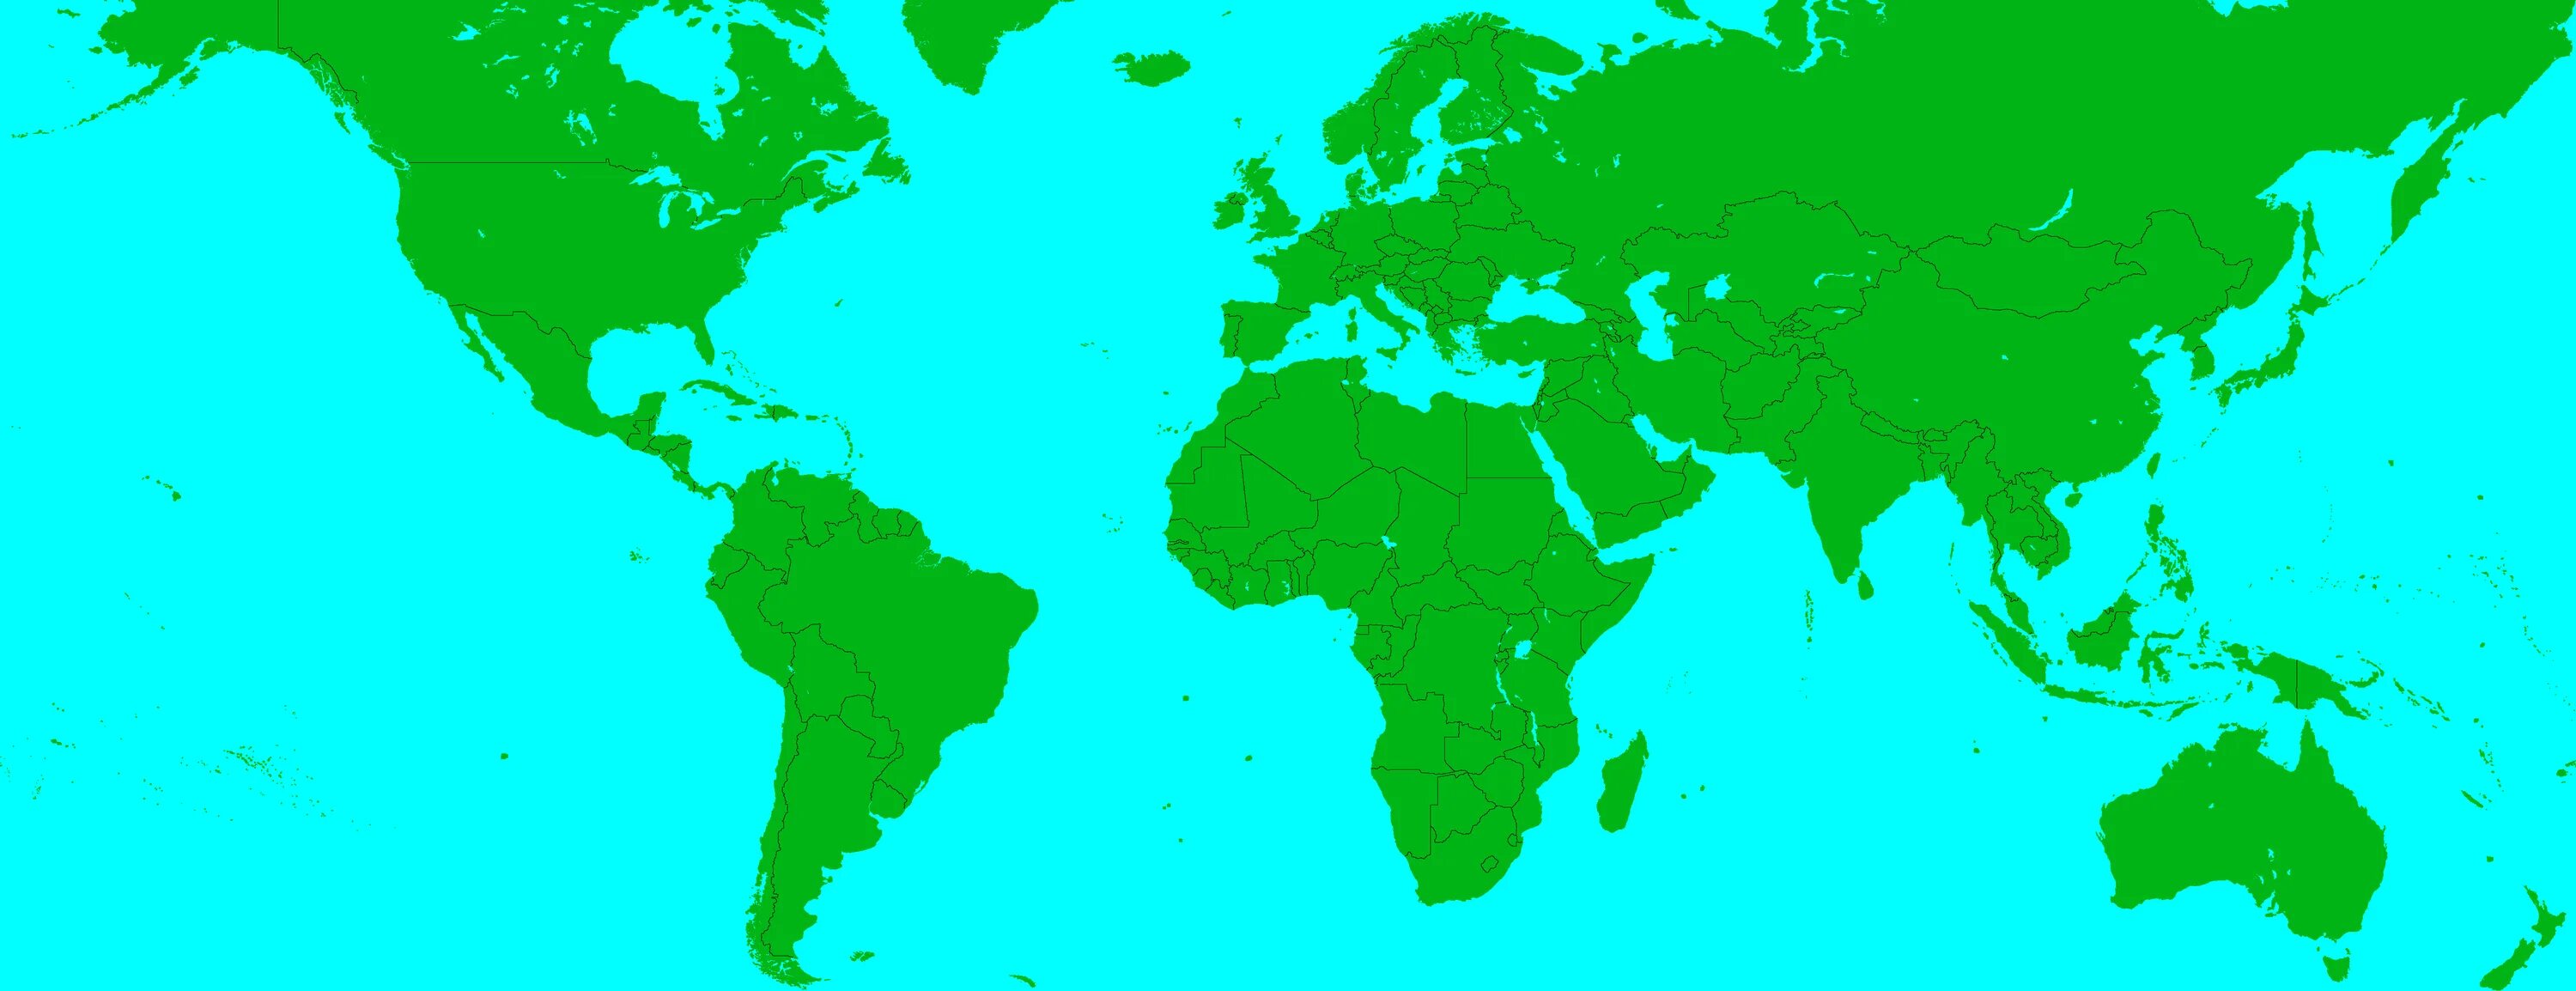 Maps for mapping. Карта мира зеленая с границами. Карта мира 2005 года. Политическая карта мира для маппинга. Карта мира маппинг.